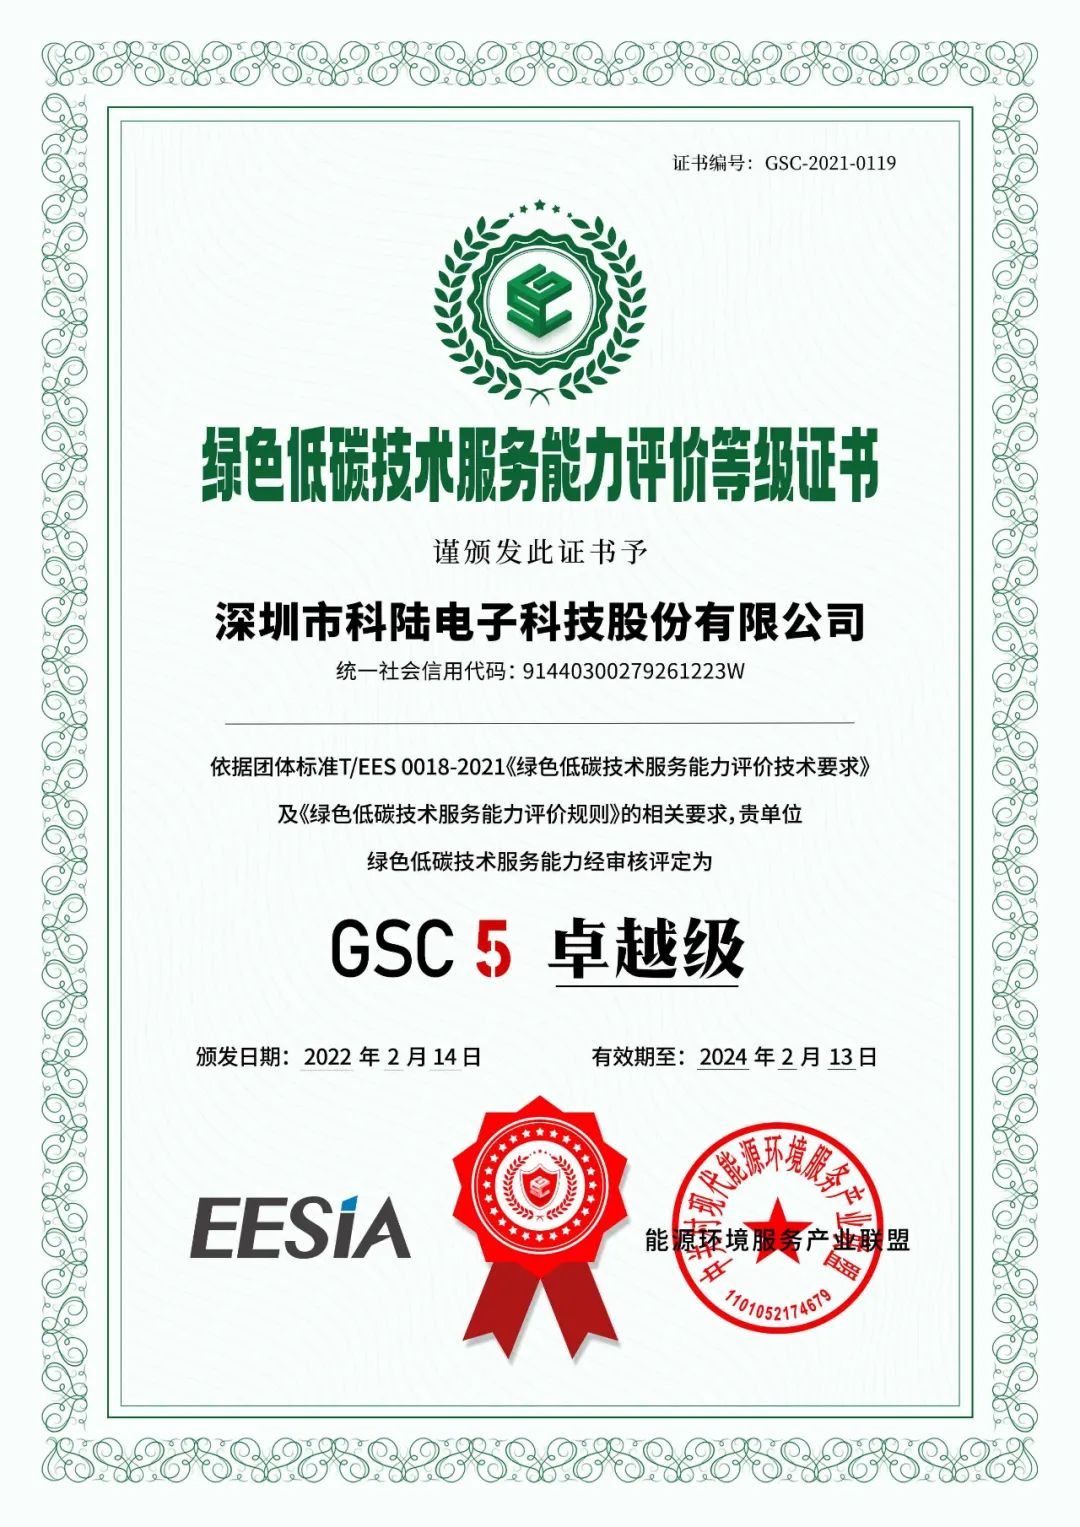 科陆获评首批绿色低碳技术服务能力GSC5（卓越级）单位